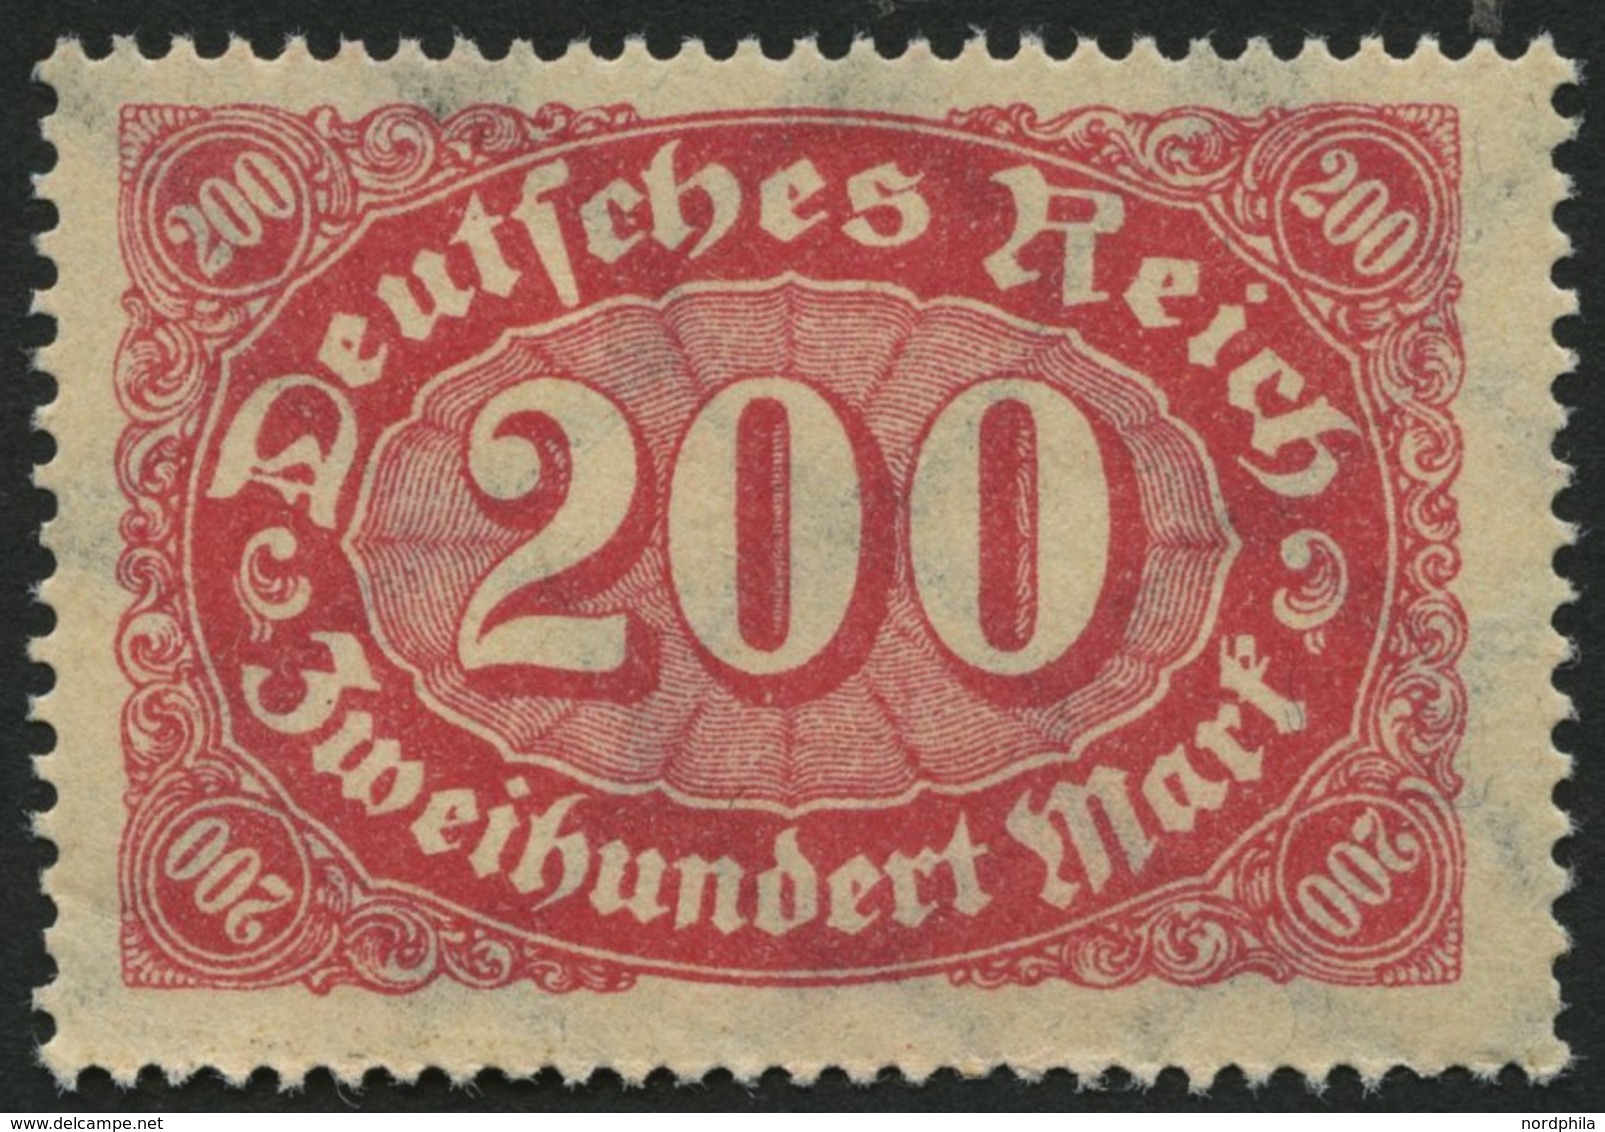 Dt. Reich 248b **, 1923, 200 M. Rotlila, Pracht, Gepr. Infla, Mi. 90.- - Usados